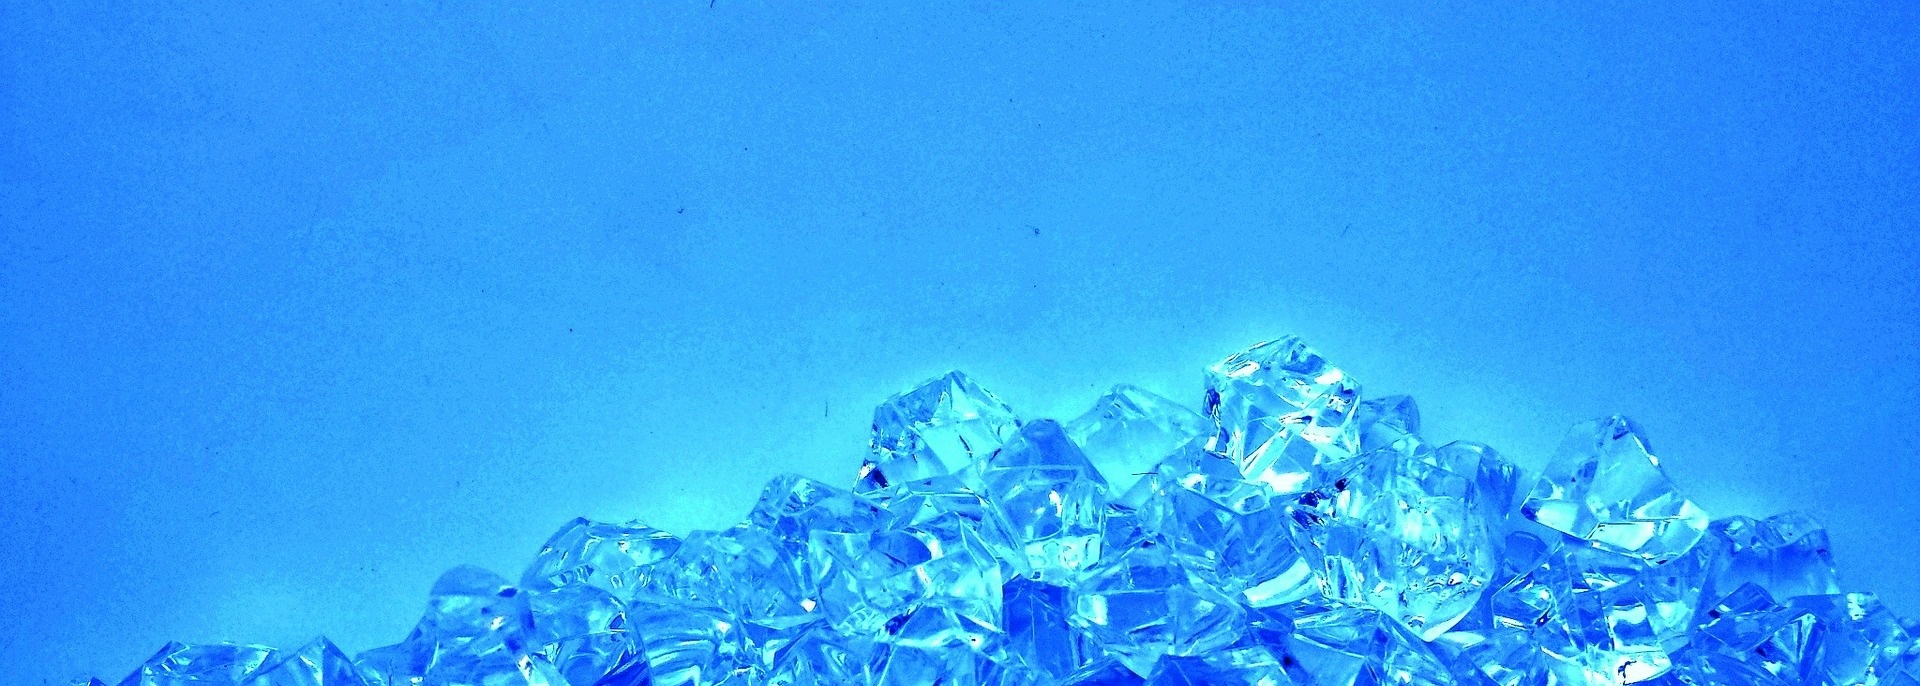 en hög av blåskimrande diamanter mot blå bakgrund.